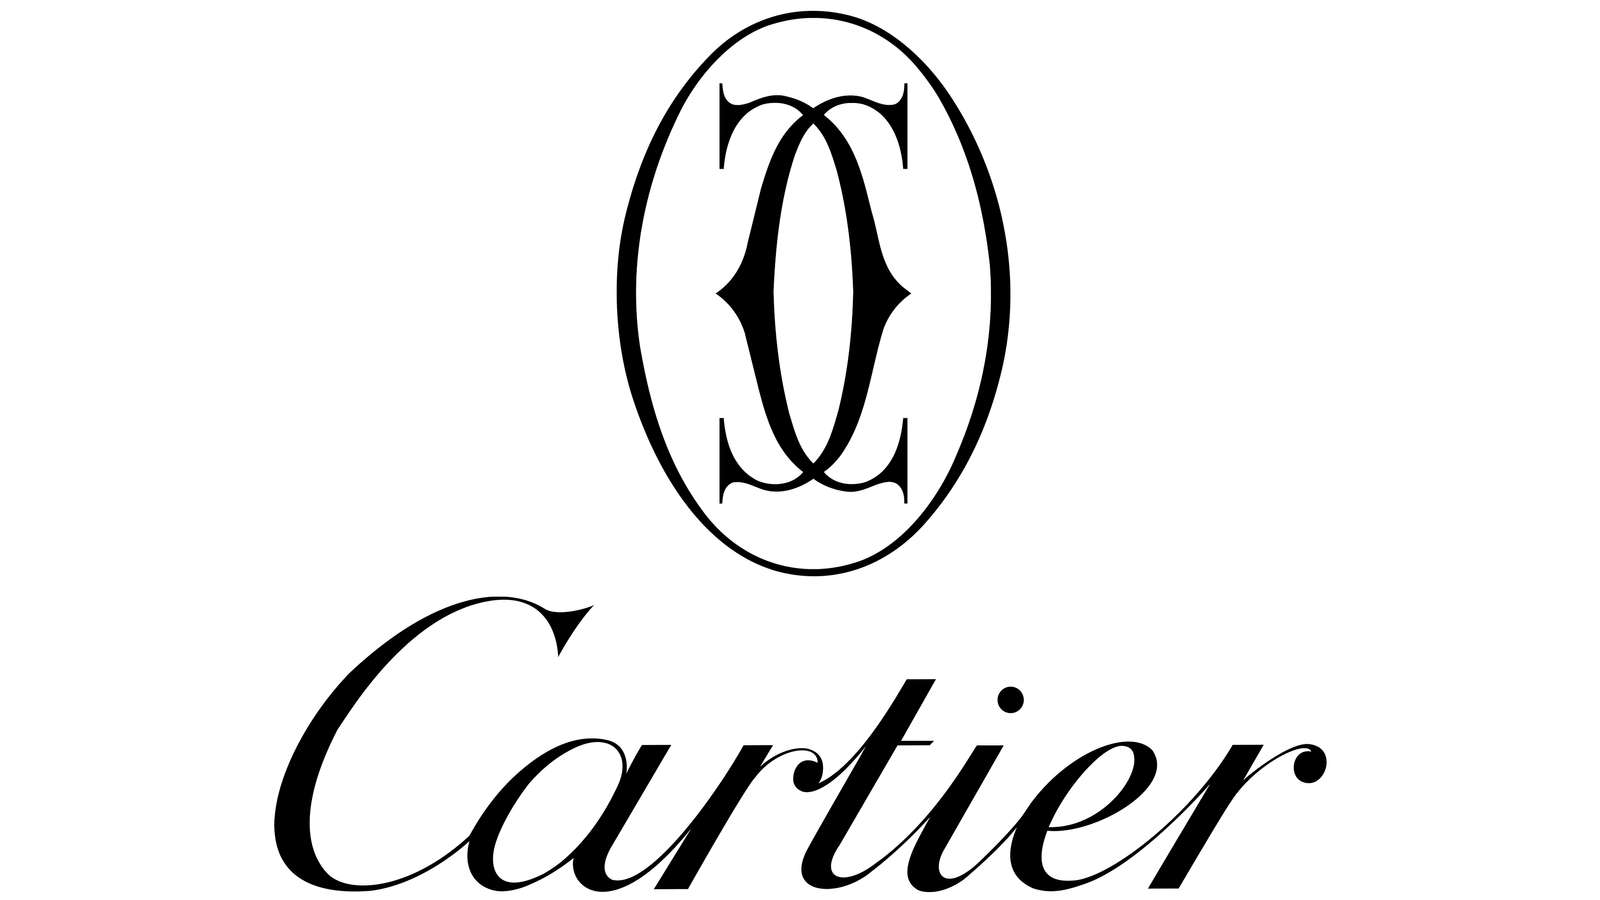 6 - puzzle - Cartier puzzle en ligne à partir d'une photo